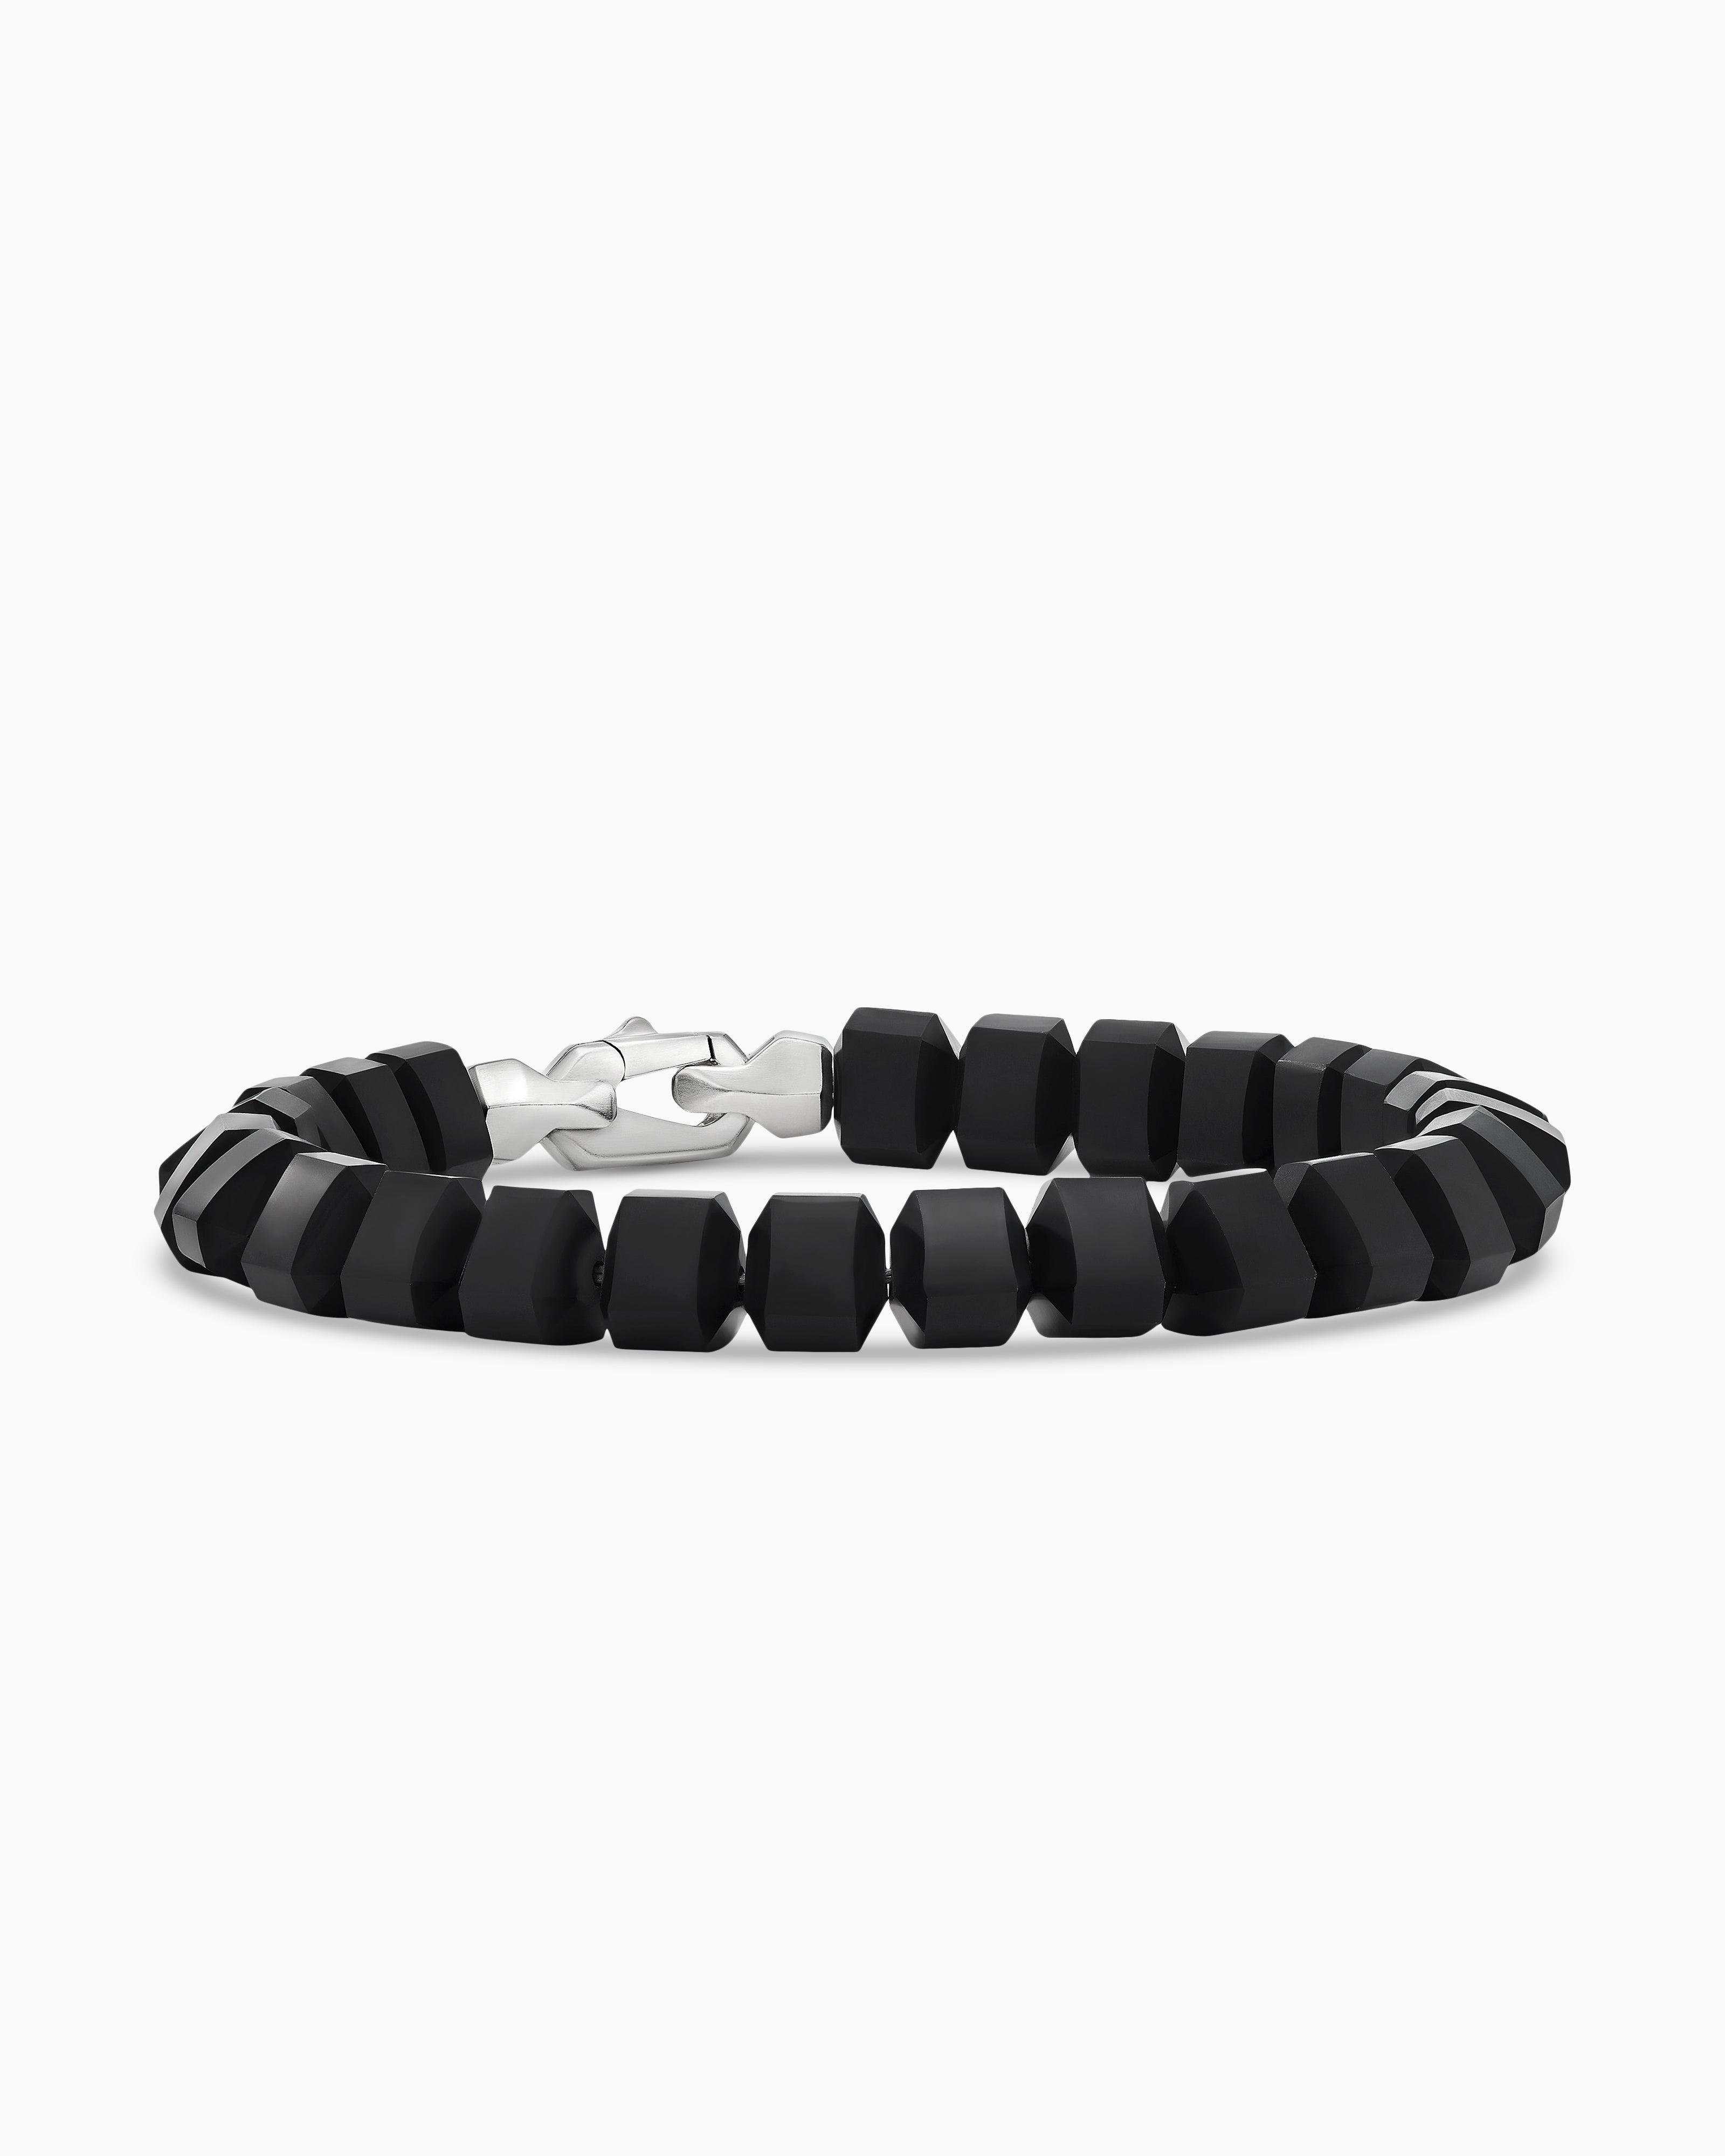 Men's Black Beaded Bracelet: Onyx & Nylon Woven